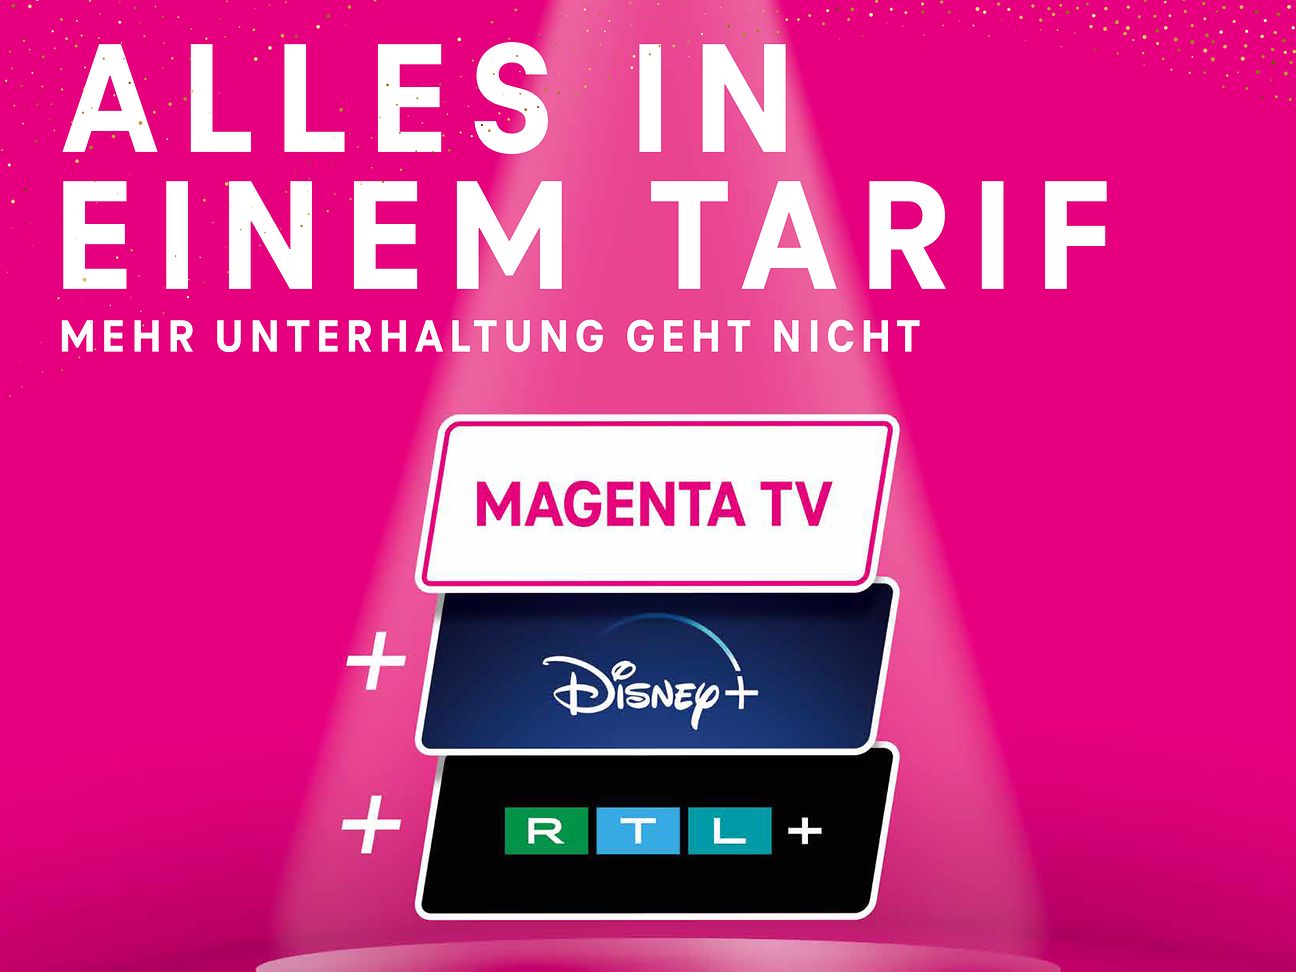 Mehr MagentaTV Sechs Monate ohne Aufpreis Deutsche Telekom